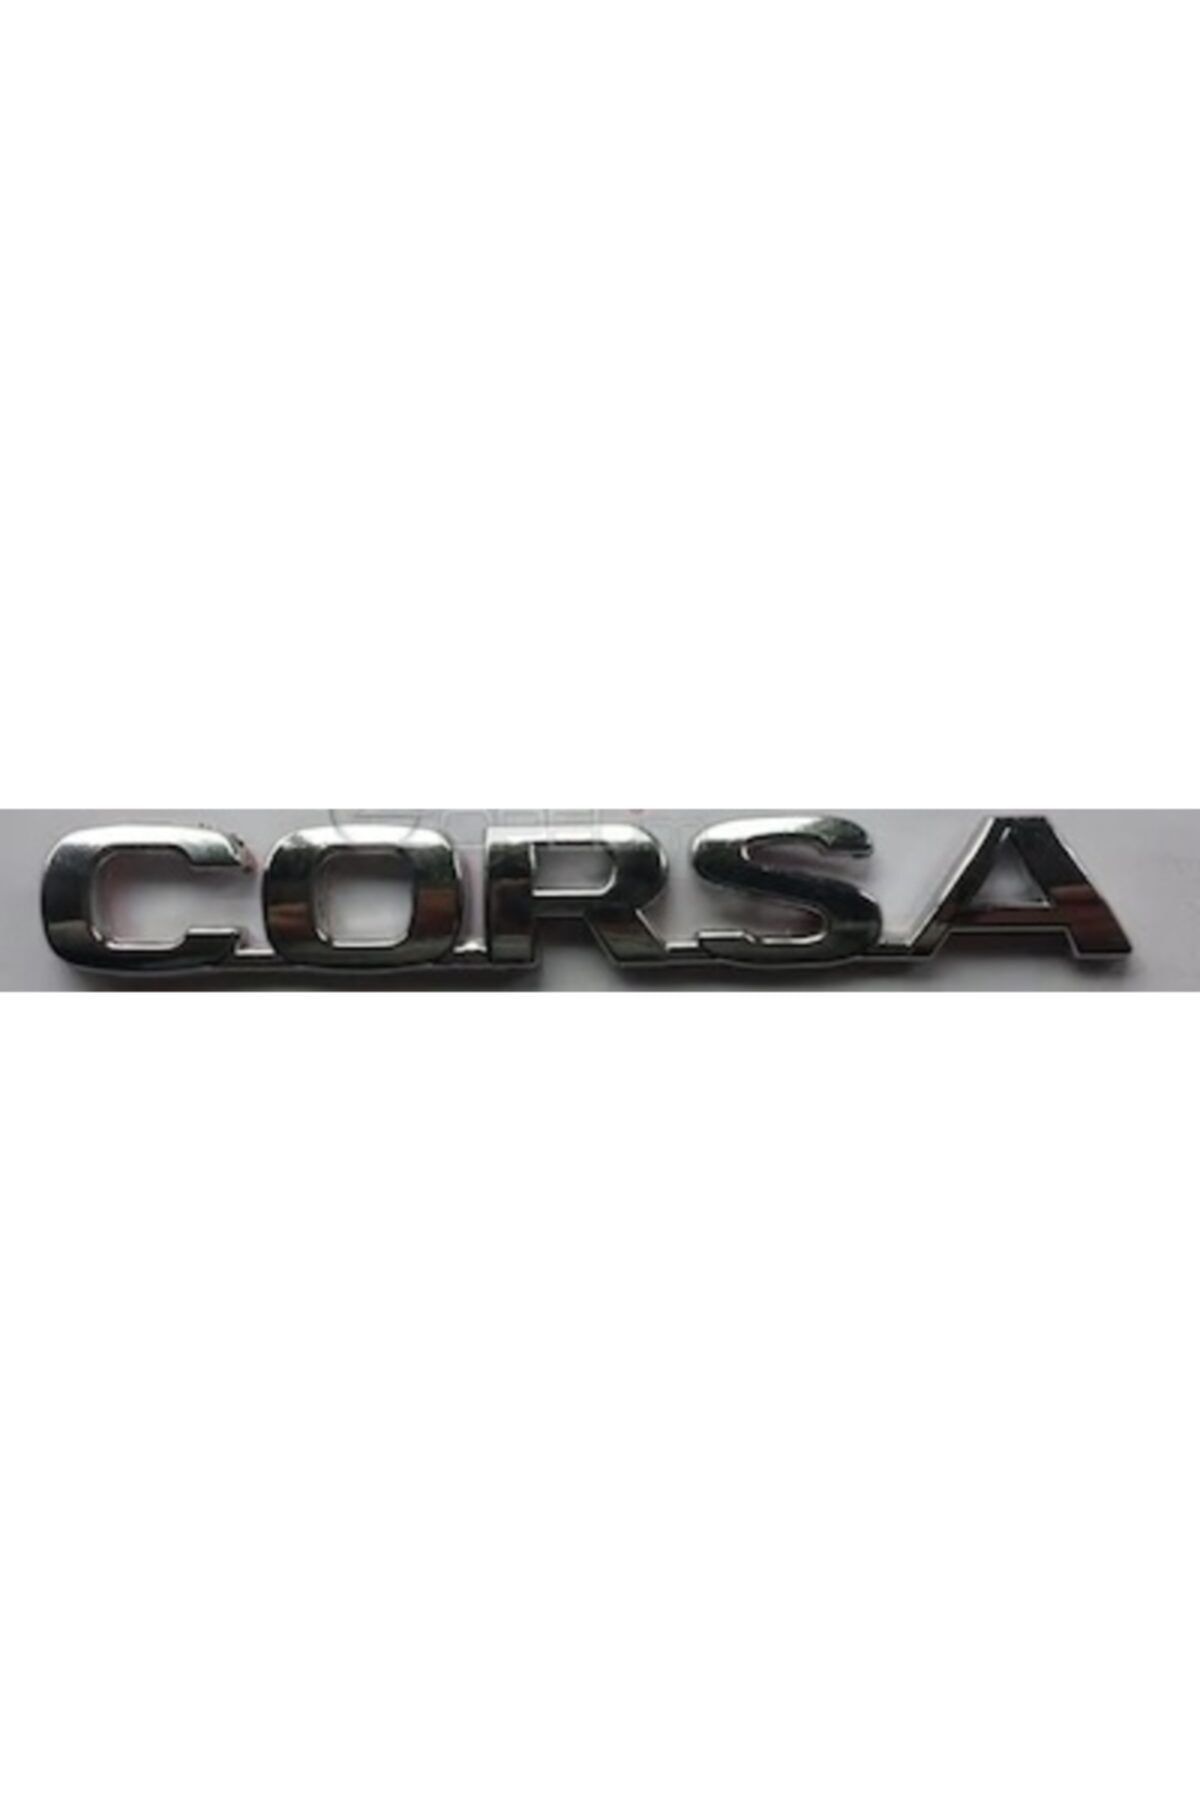 Yerli Opel Corsa Yazısı